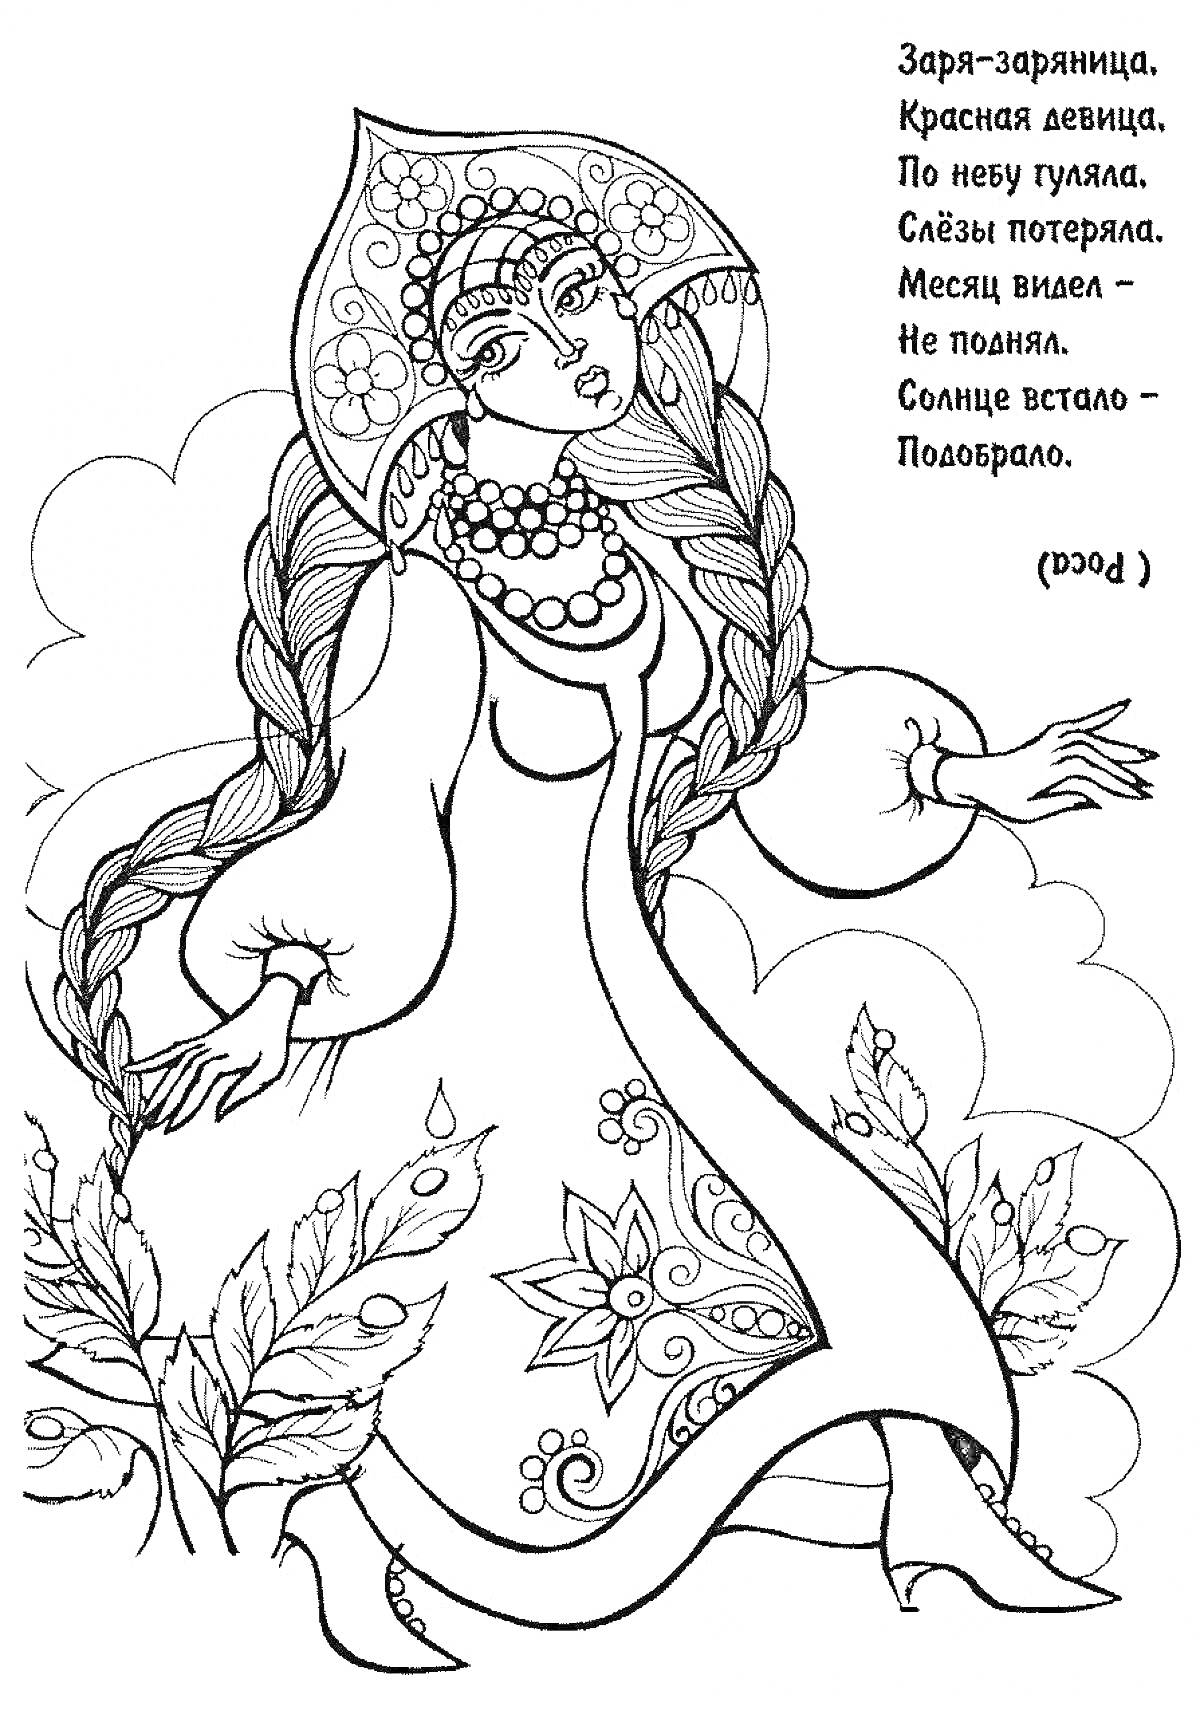 Раскраска Дева с косами и кокошником в поле, четверостишие-загадка